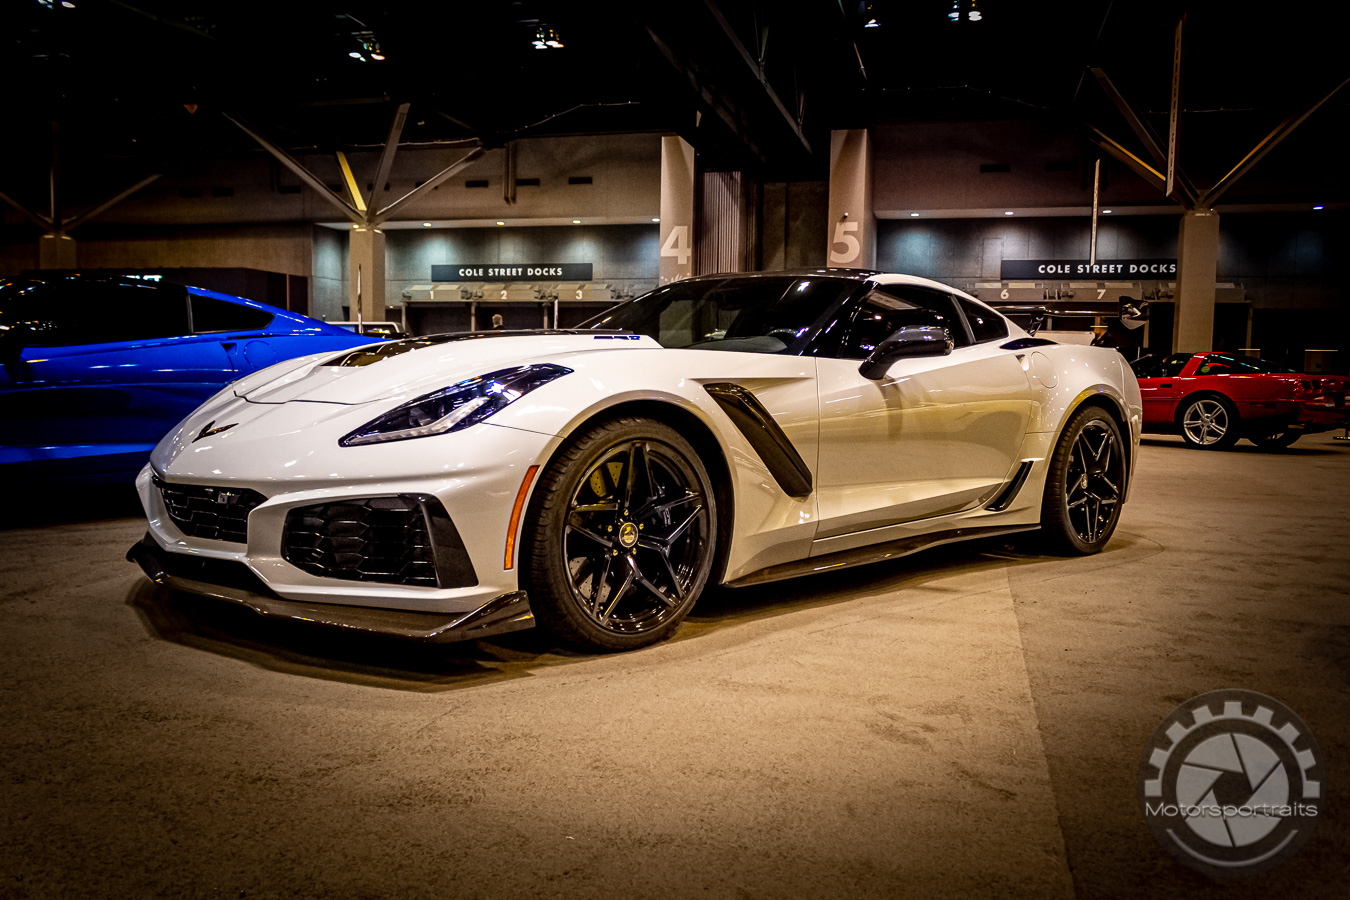 St. Louis Auto Show - Corvette Club - Motorsportraits